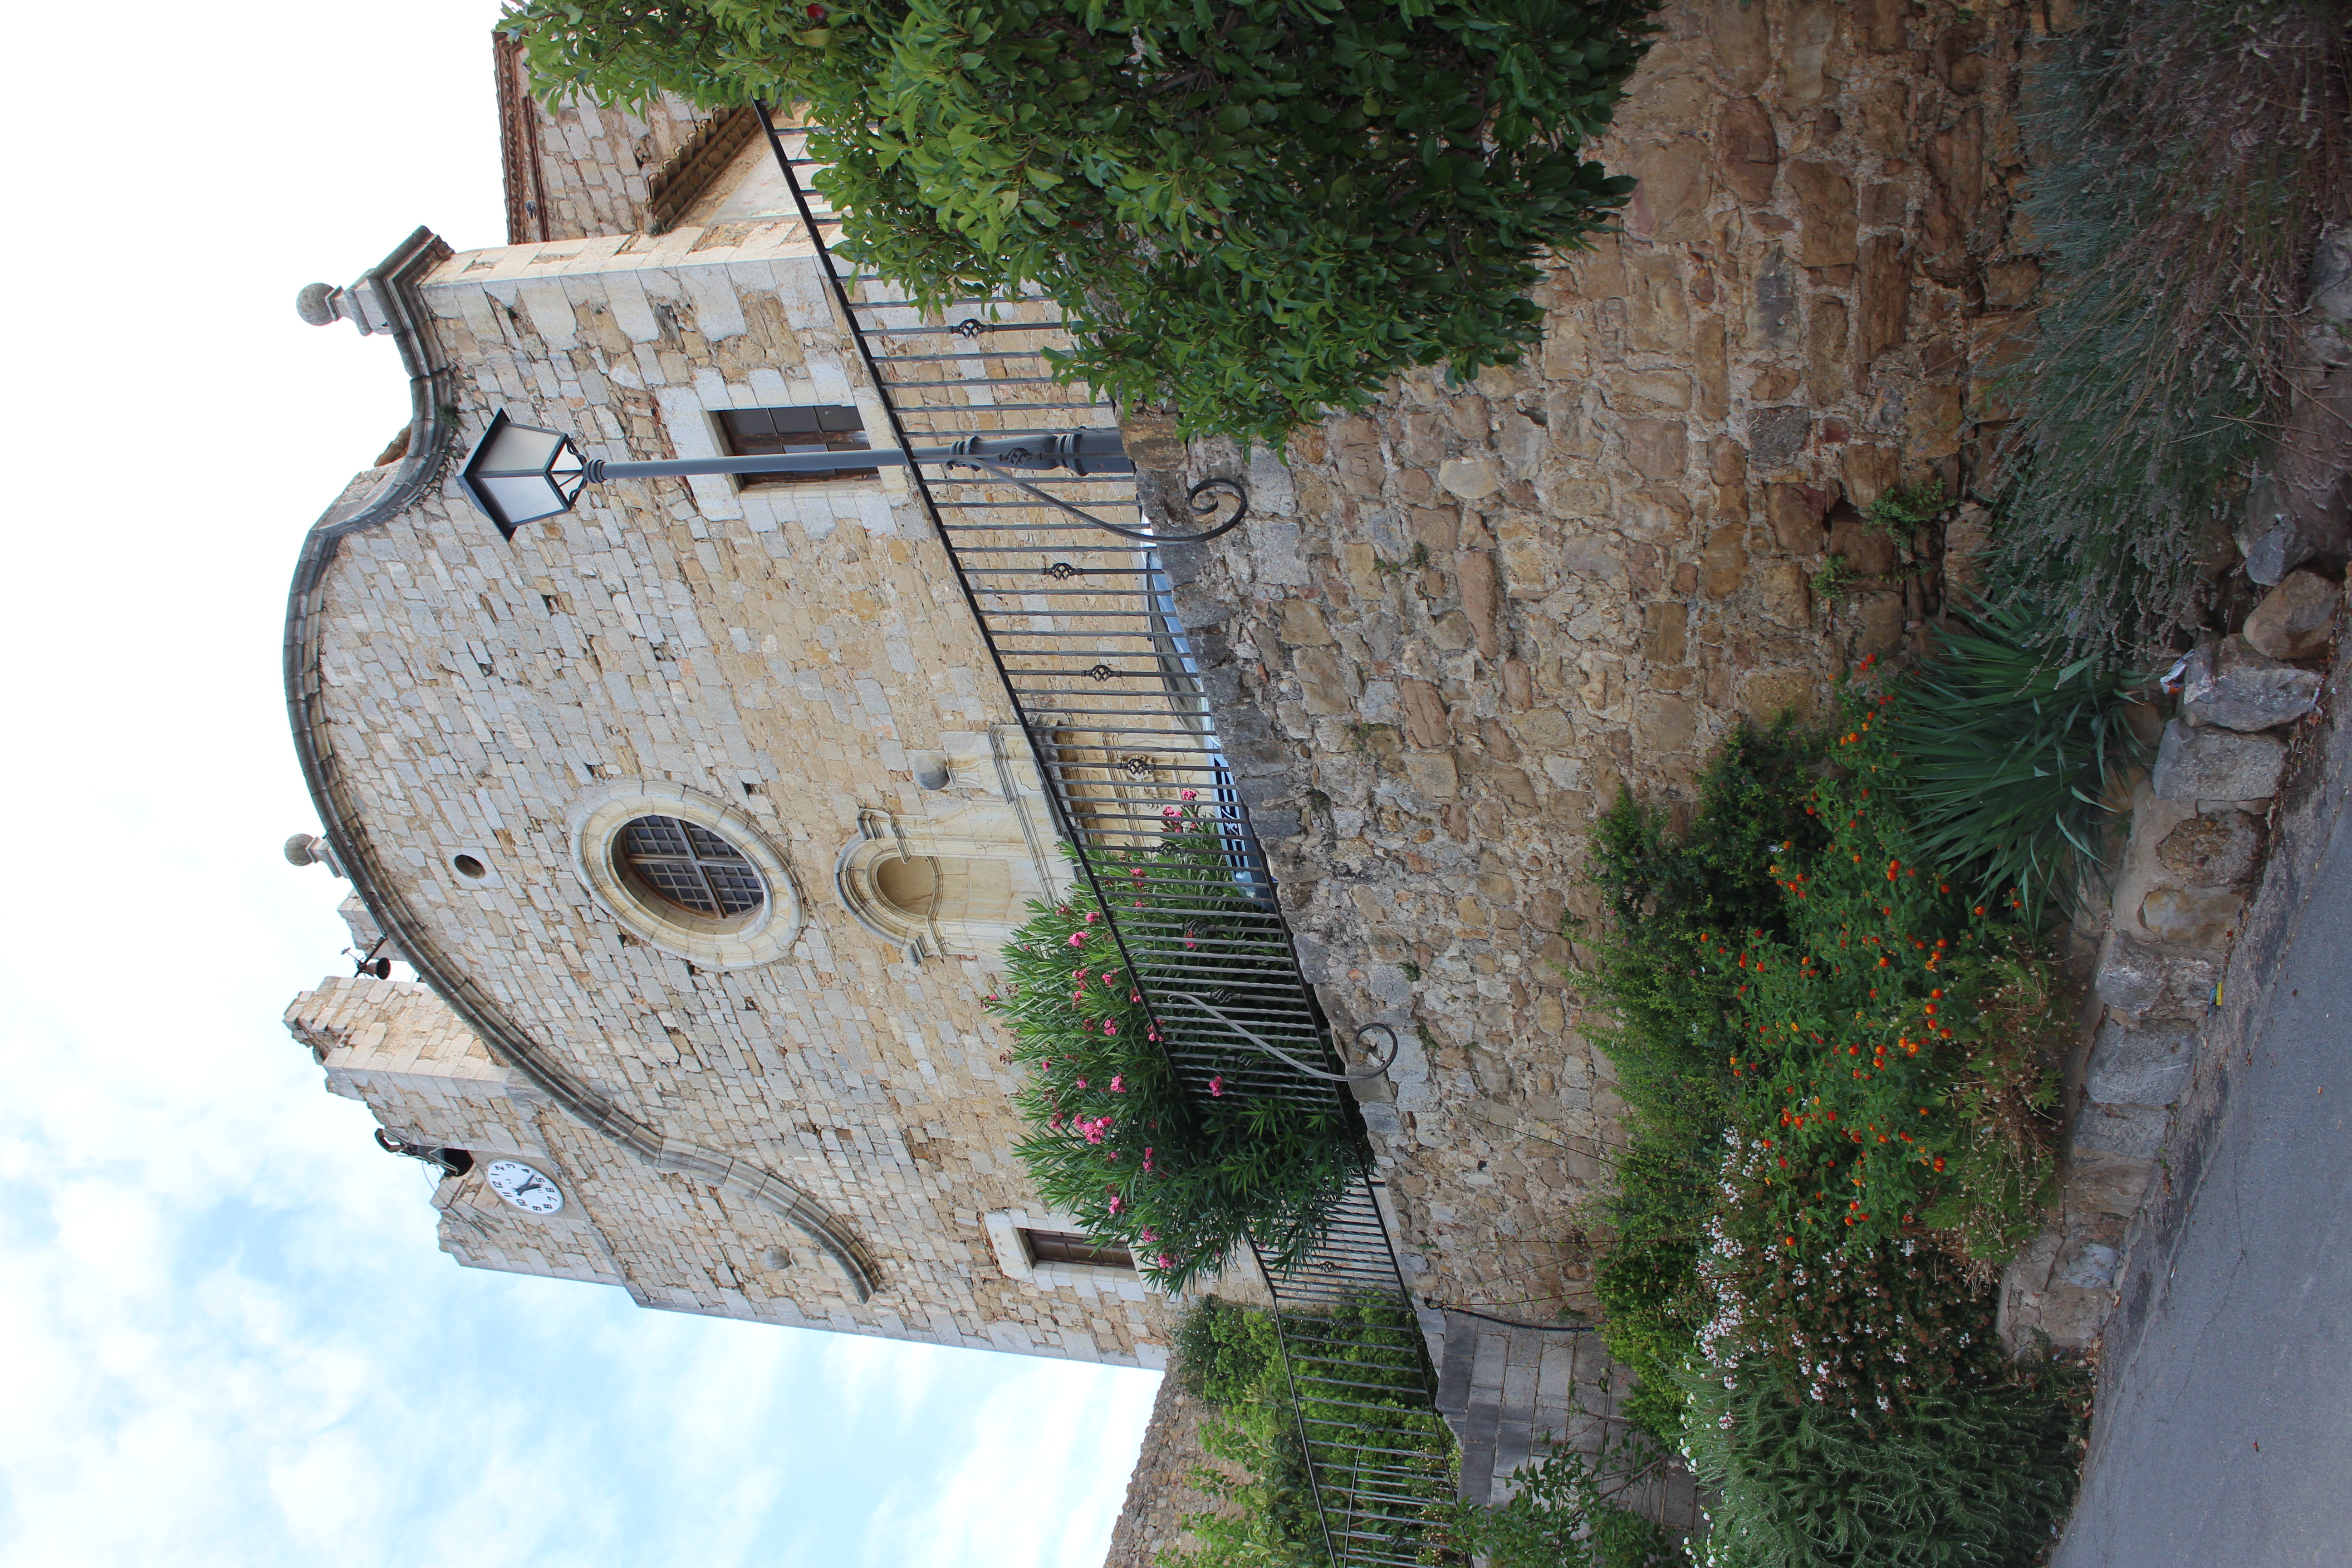 poble de Begur amb el seu castell al fons